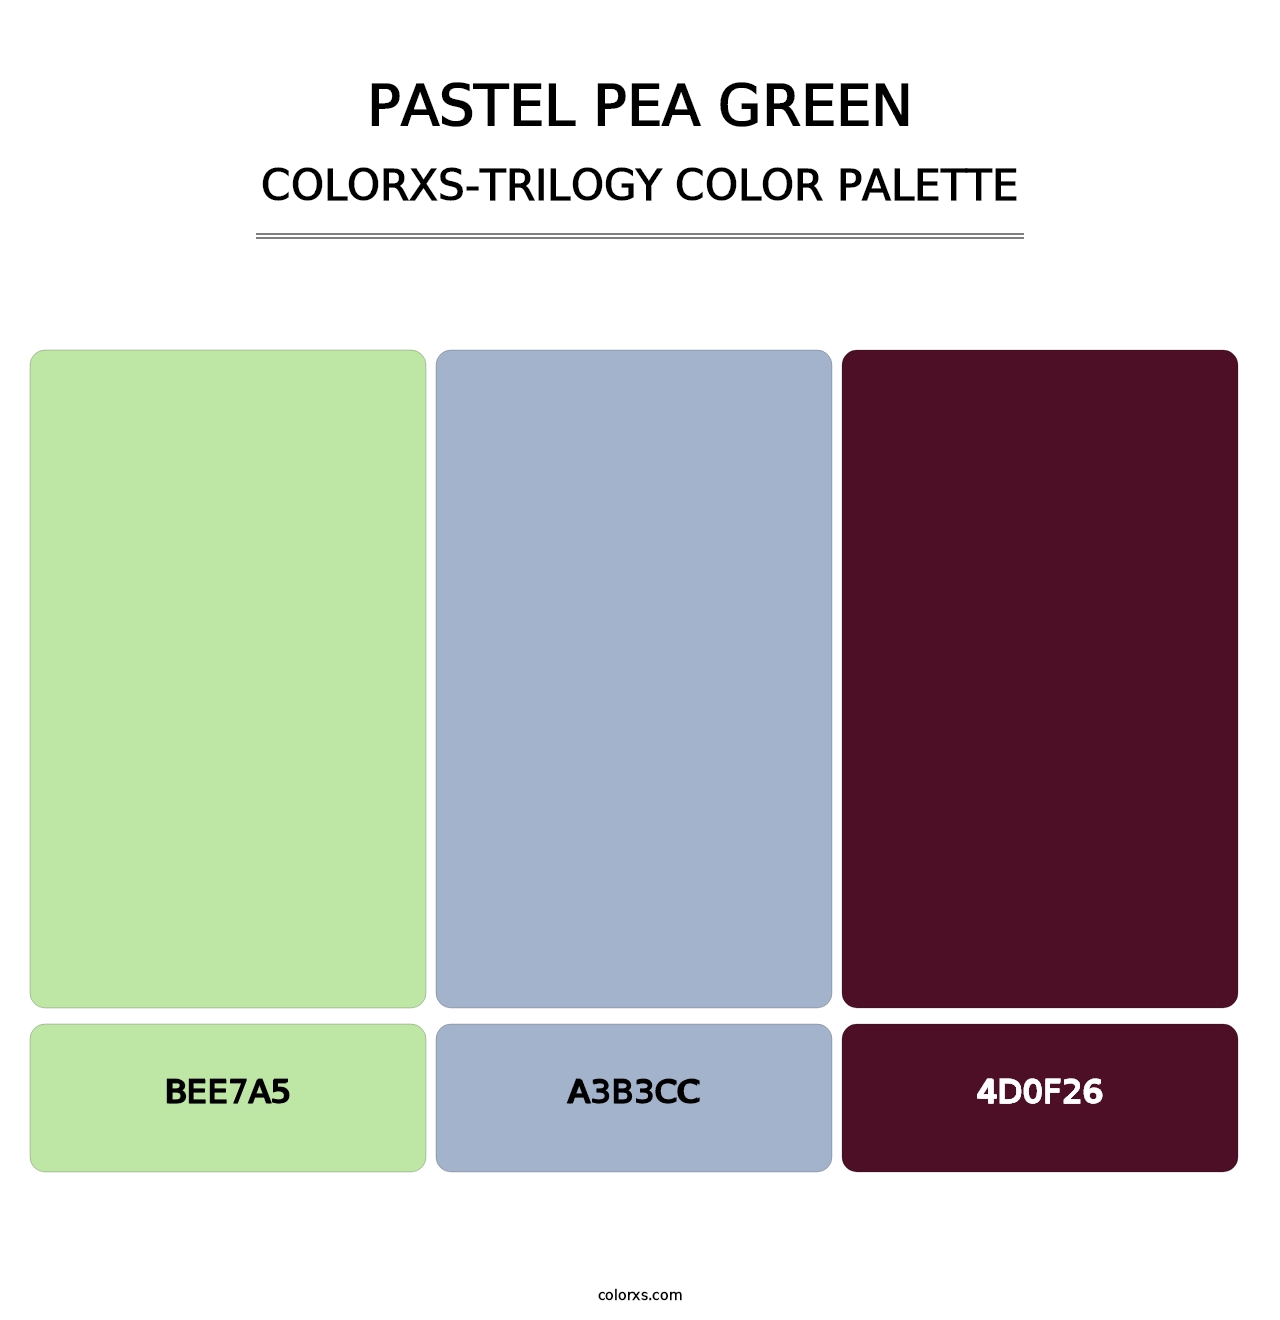 Pastel Pea Green - Colorxs Trilogy Palette